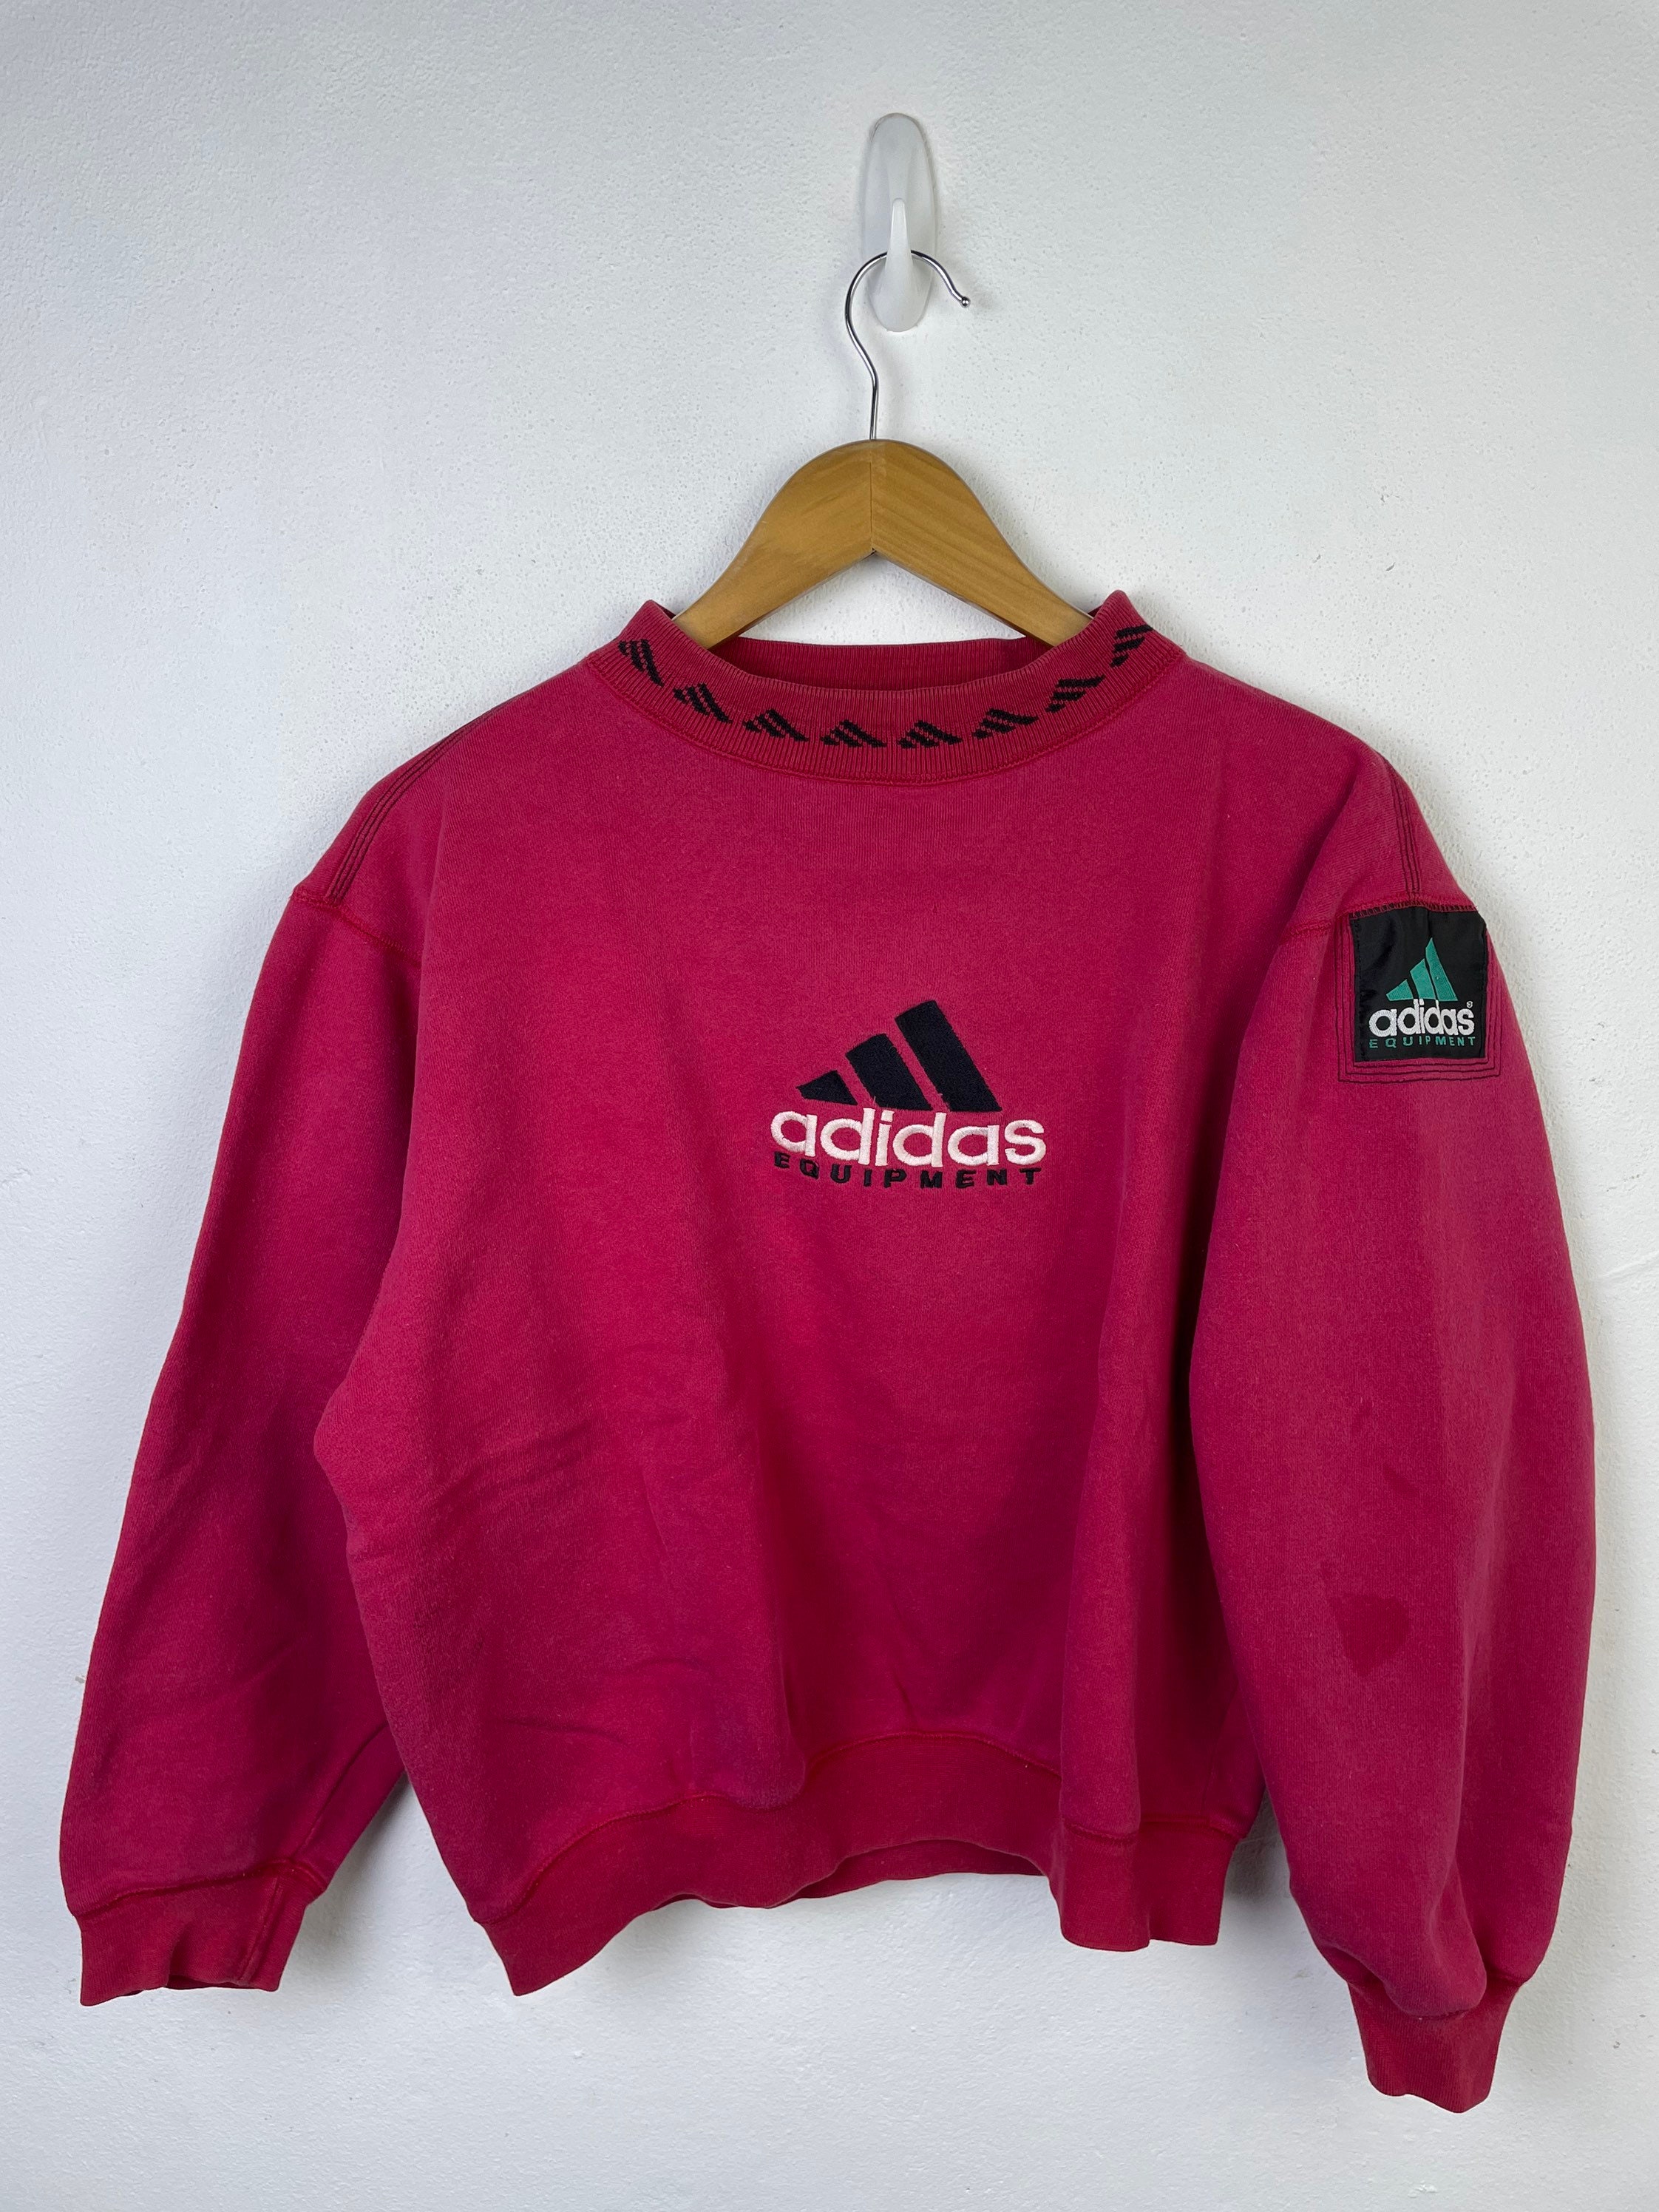 desagradable arrepentirse reporte Rare Vintage 90's Adidas Equipment Sweatshirt - Etsy